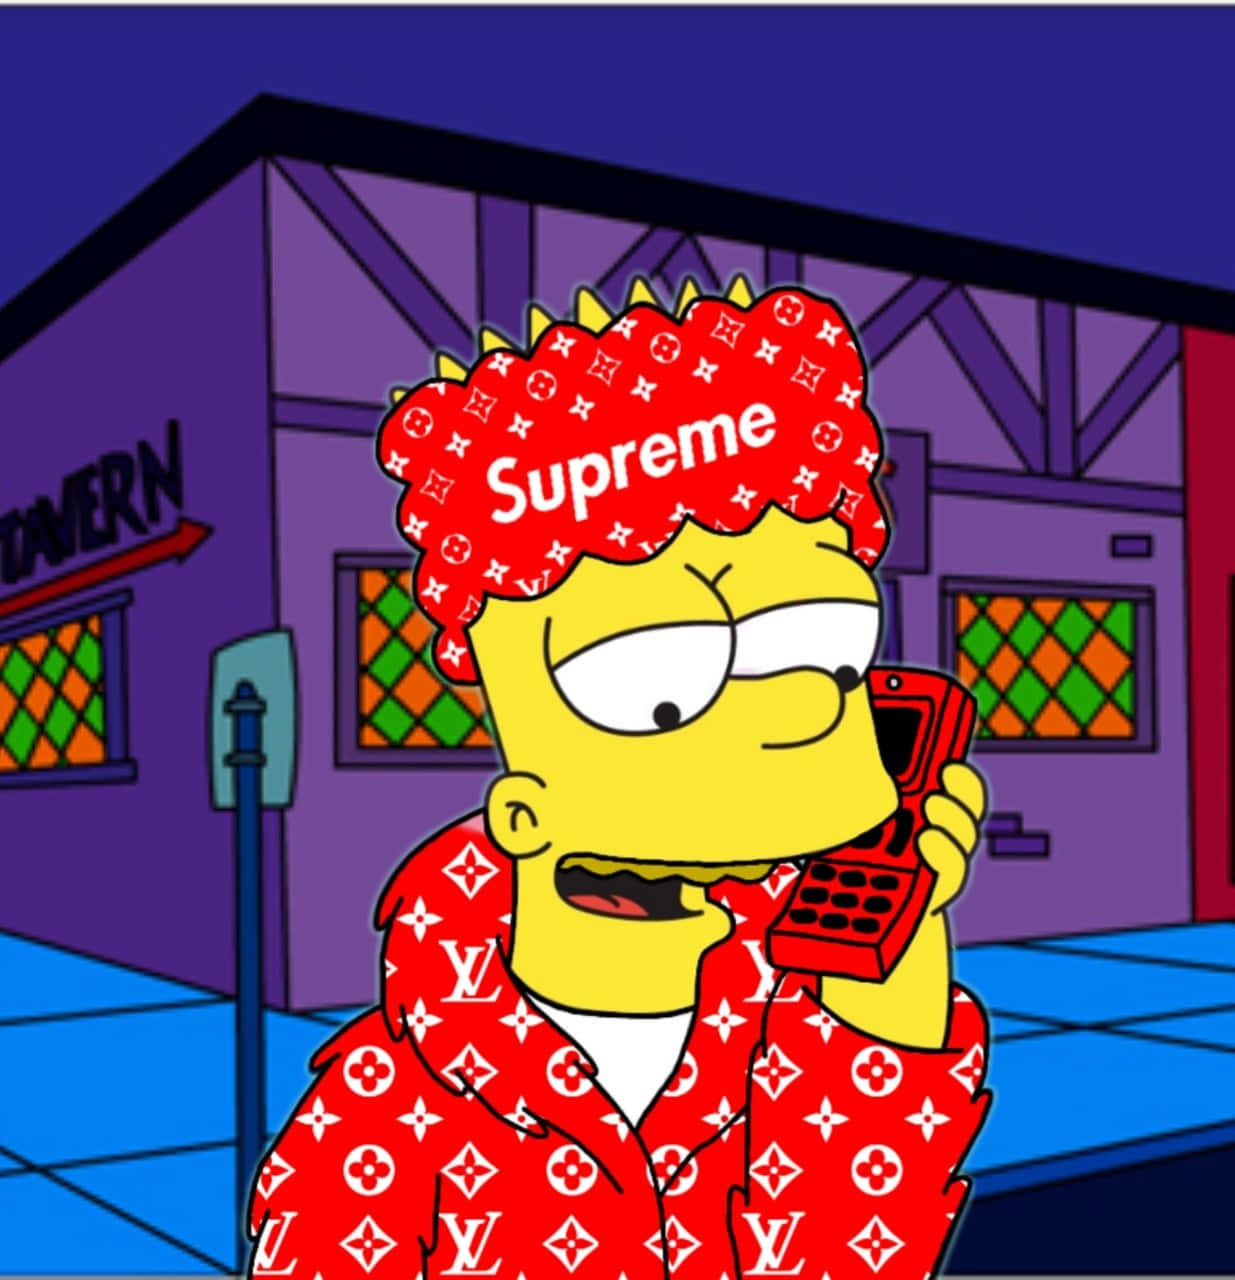 Suprème Bart Simpson udviser sit stil og attitude. Wallpaper